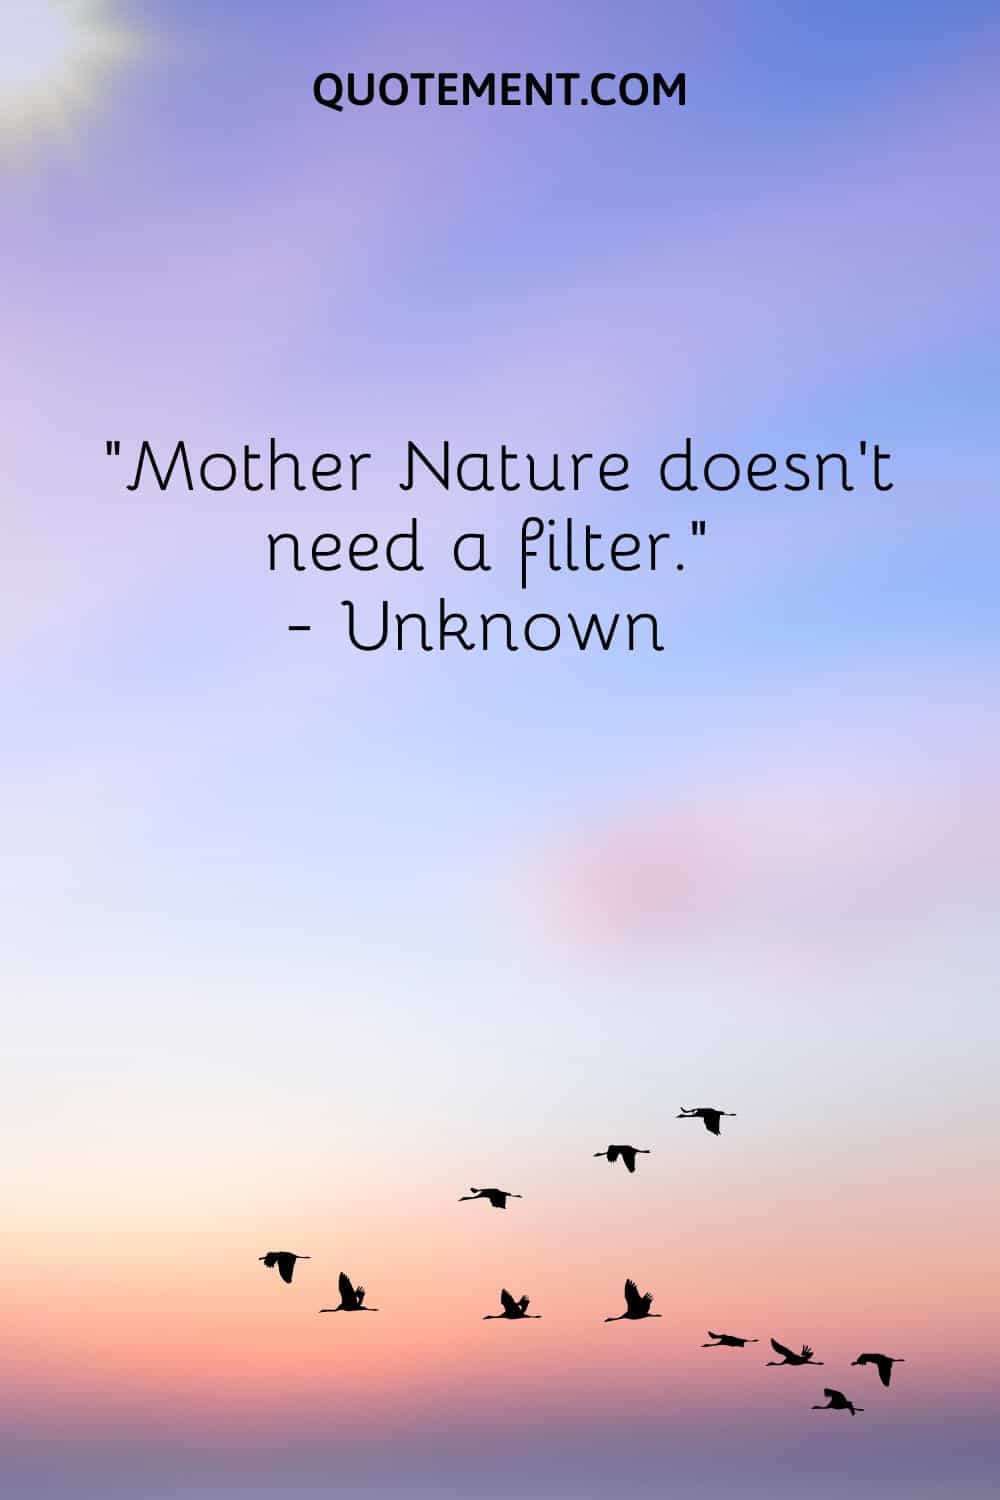 La madre naturaleza no necesita filtro